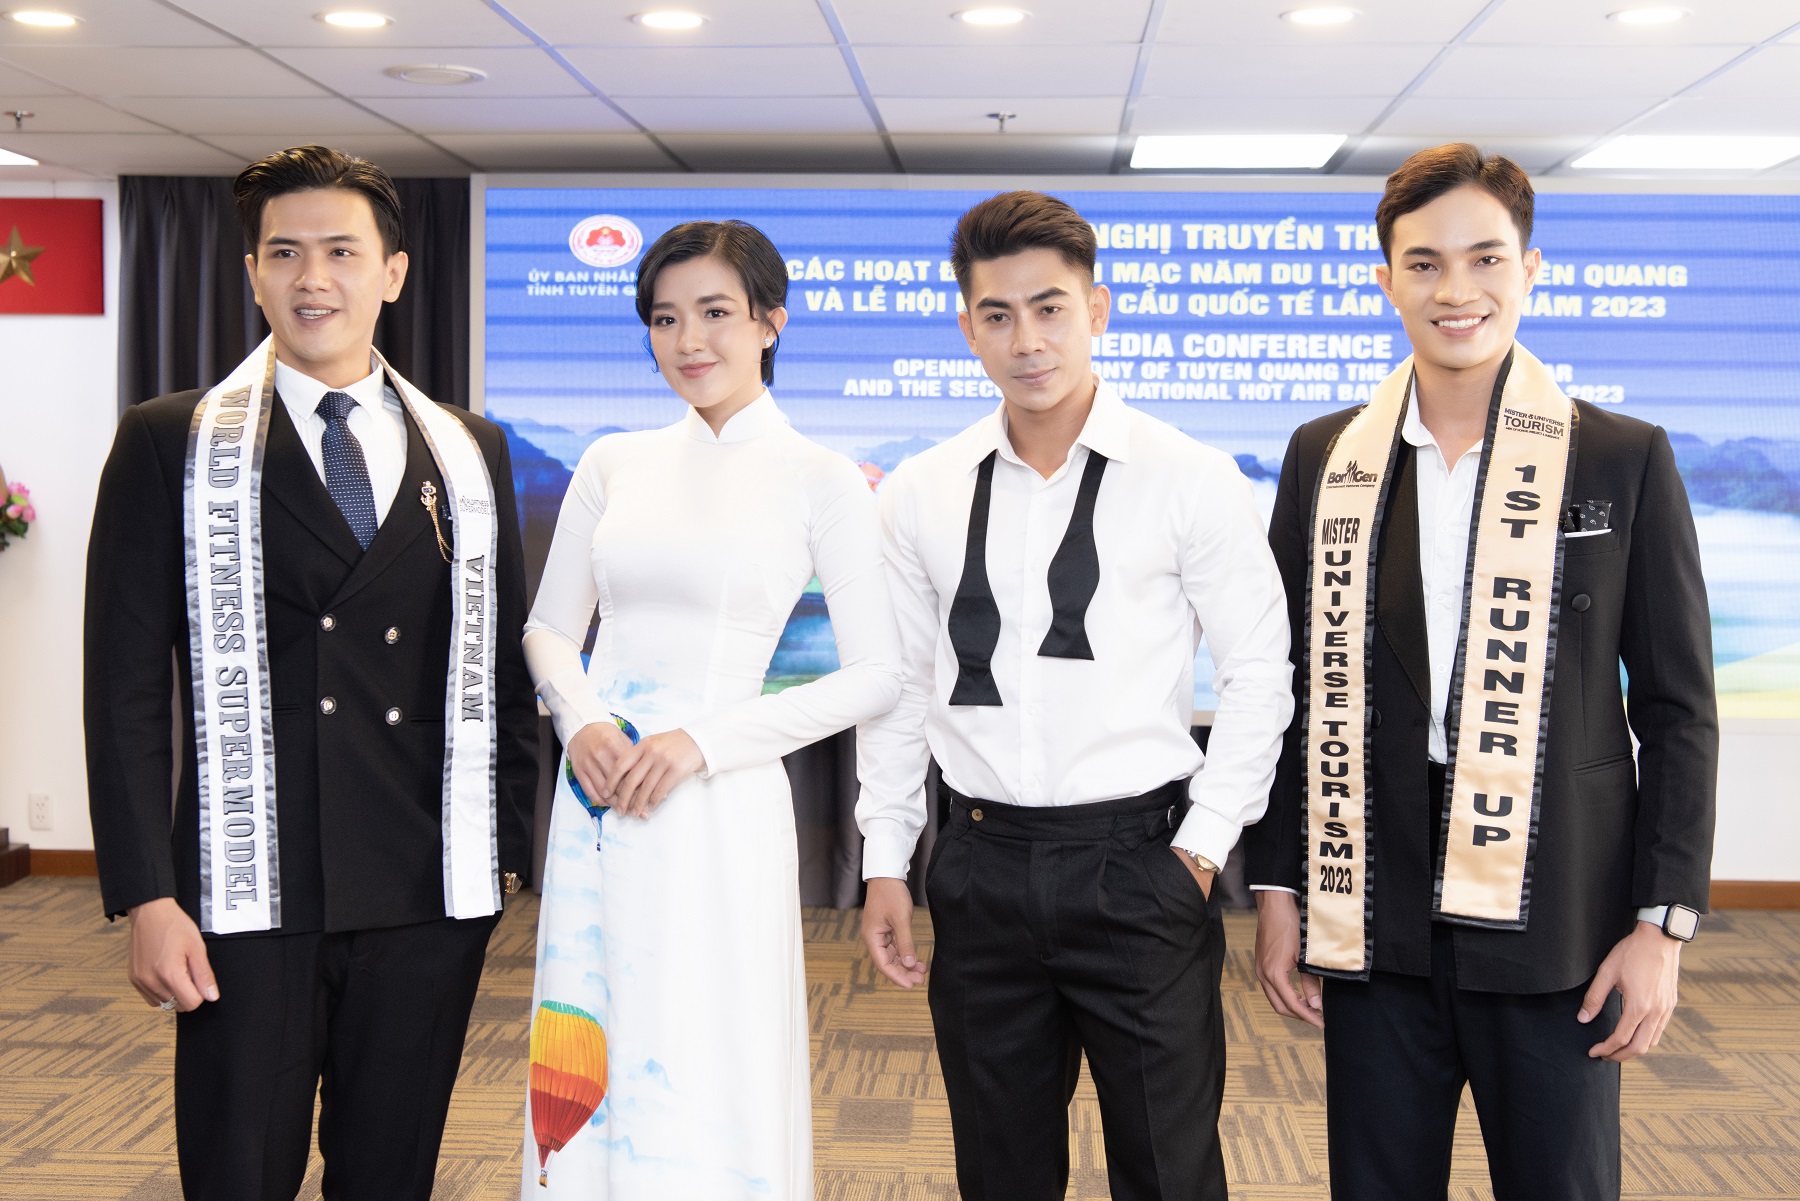 Á vương Hoàng Sơn, Á hậu Quản Hân trở thành Đại sứ Lễ hội Khinh khí cầu quốc tế 2023 - Ảnh 3.